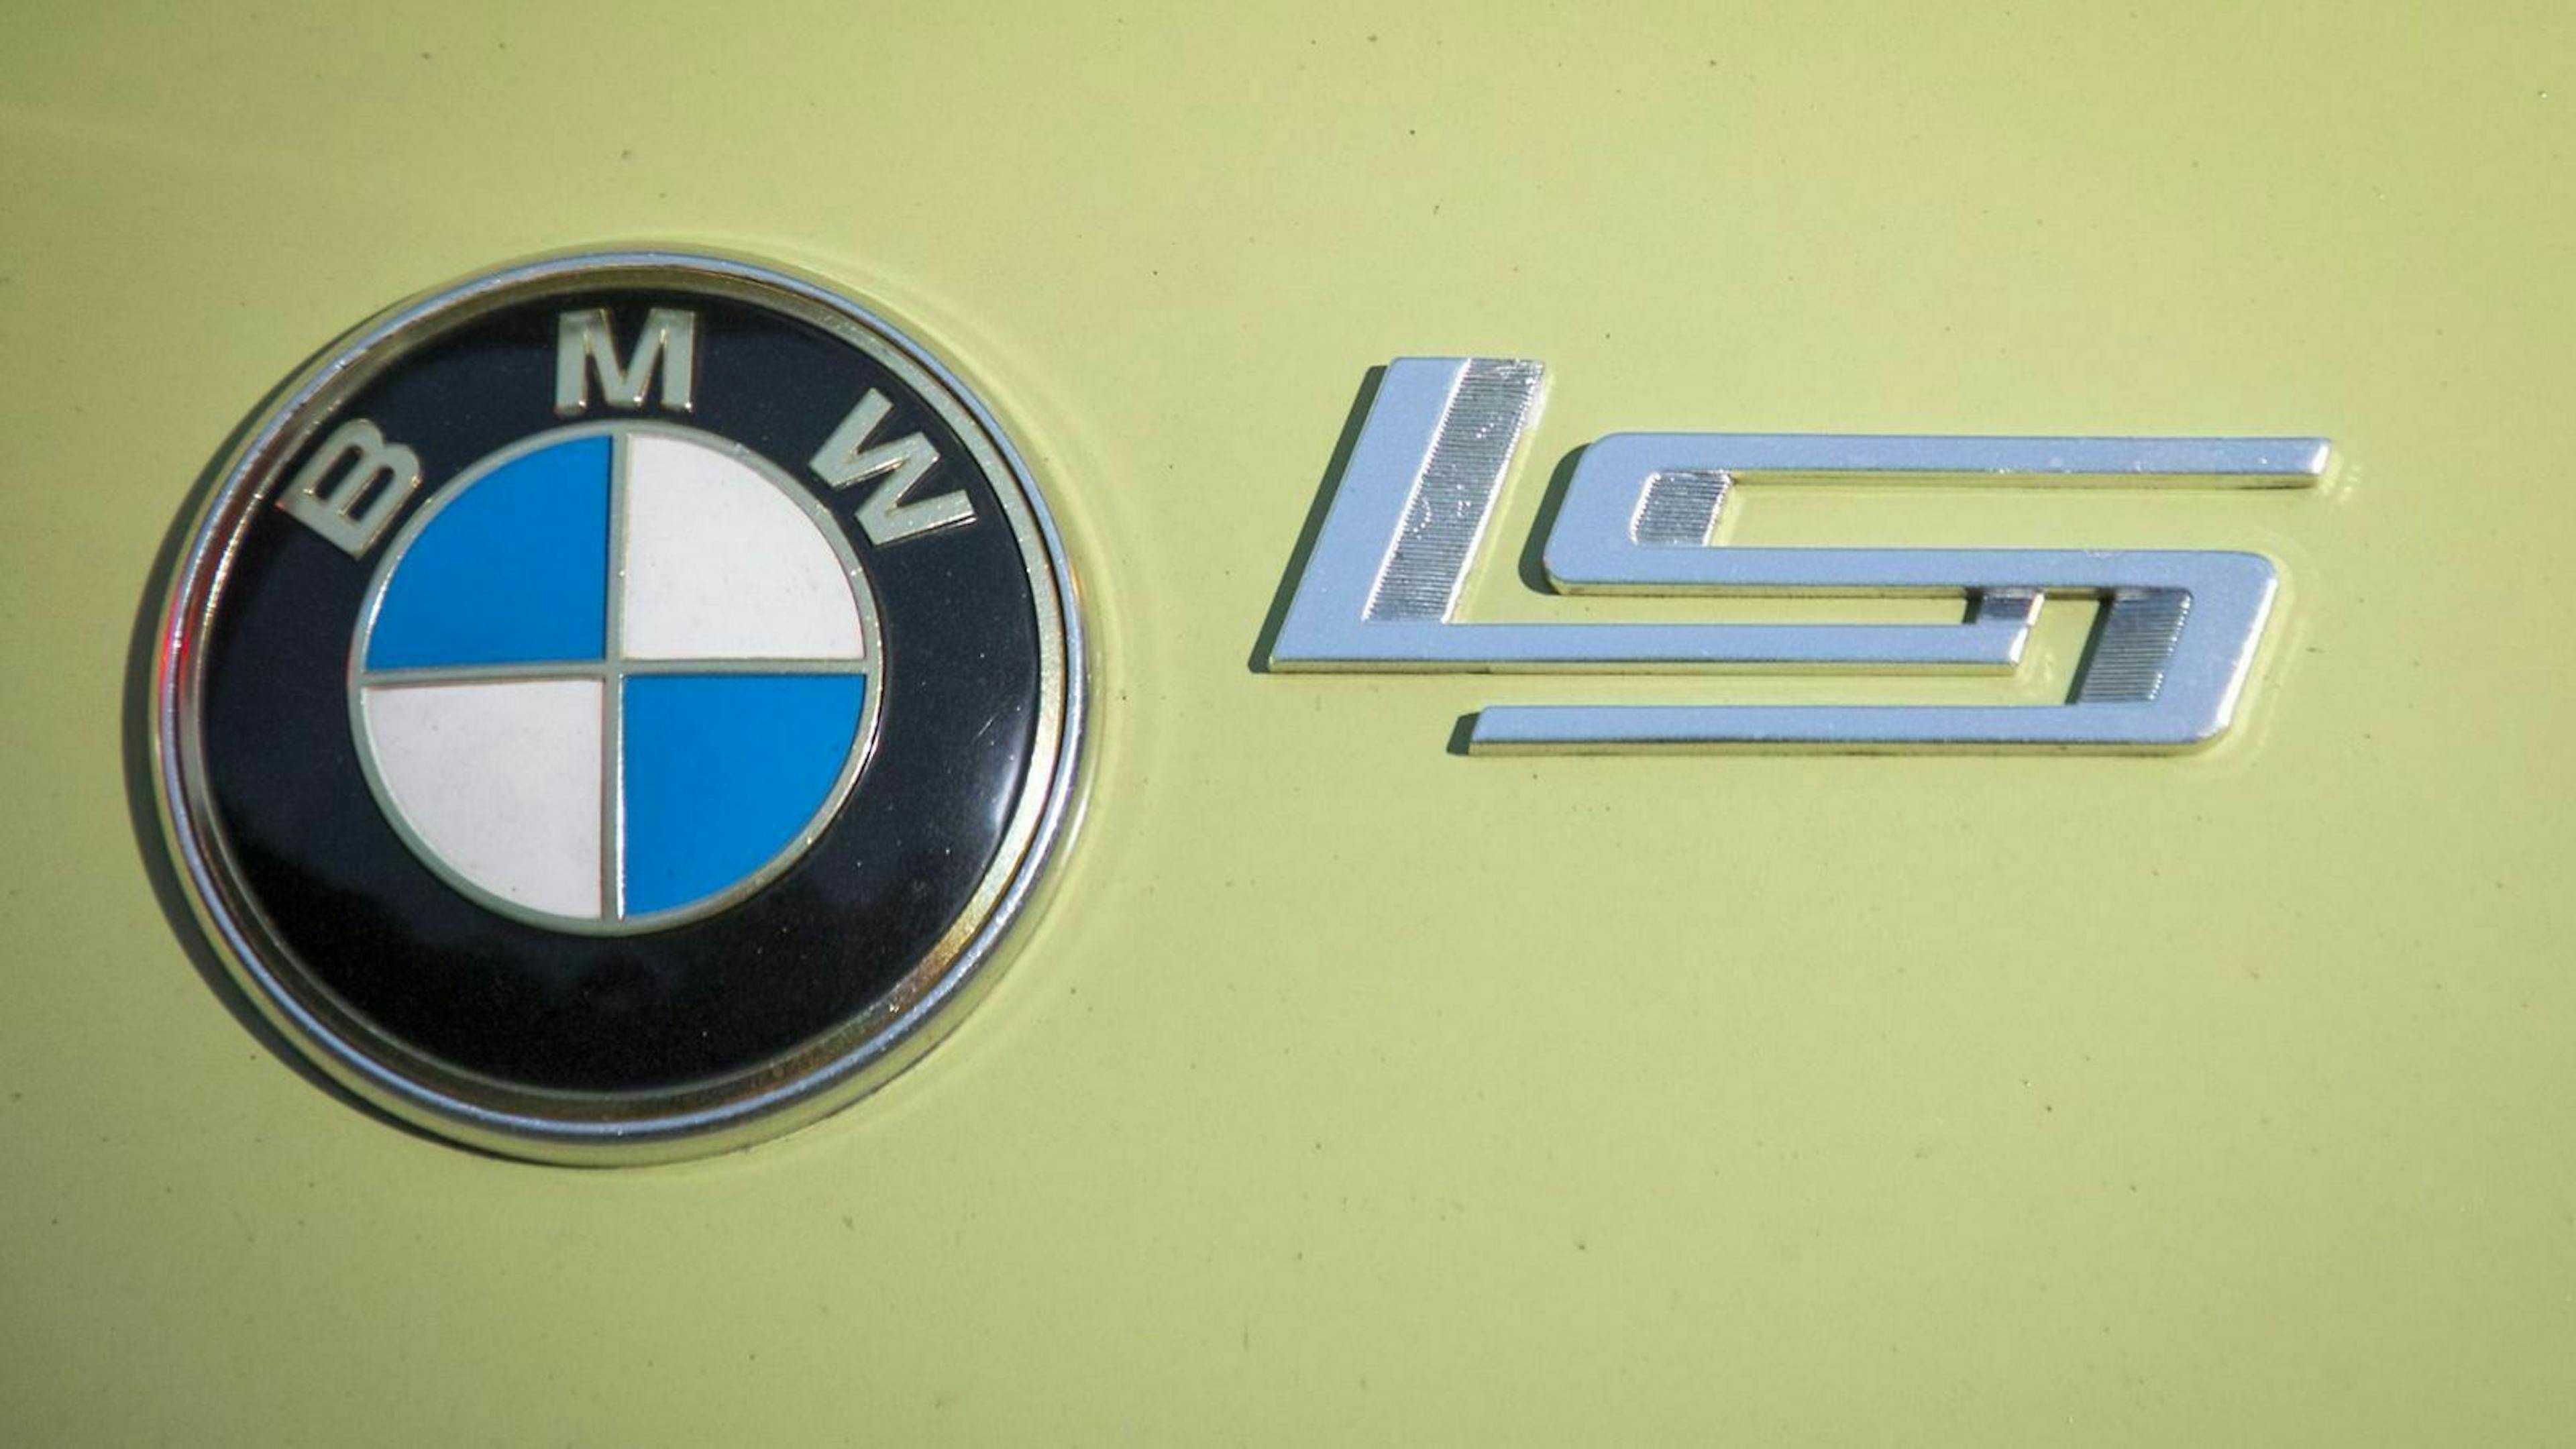 Blick auf das LS-Emblem des BMW 700